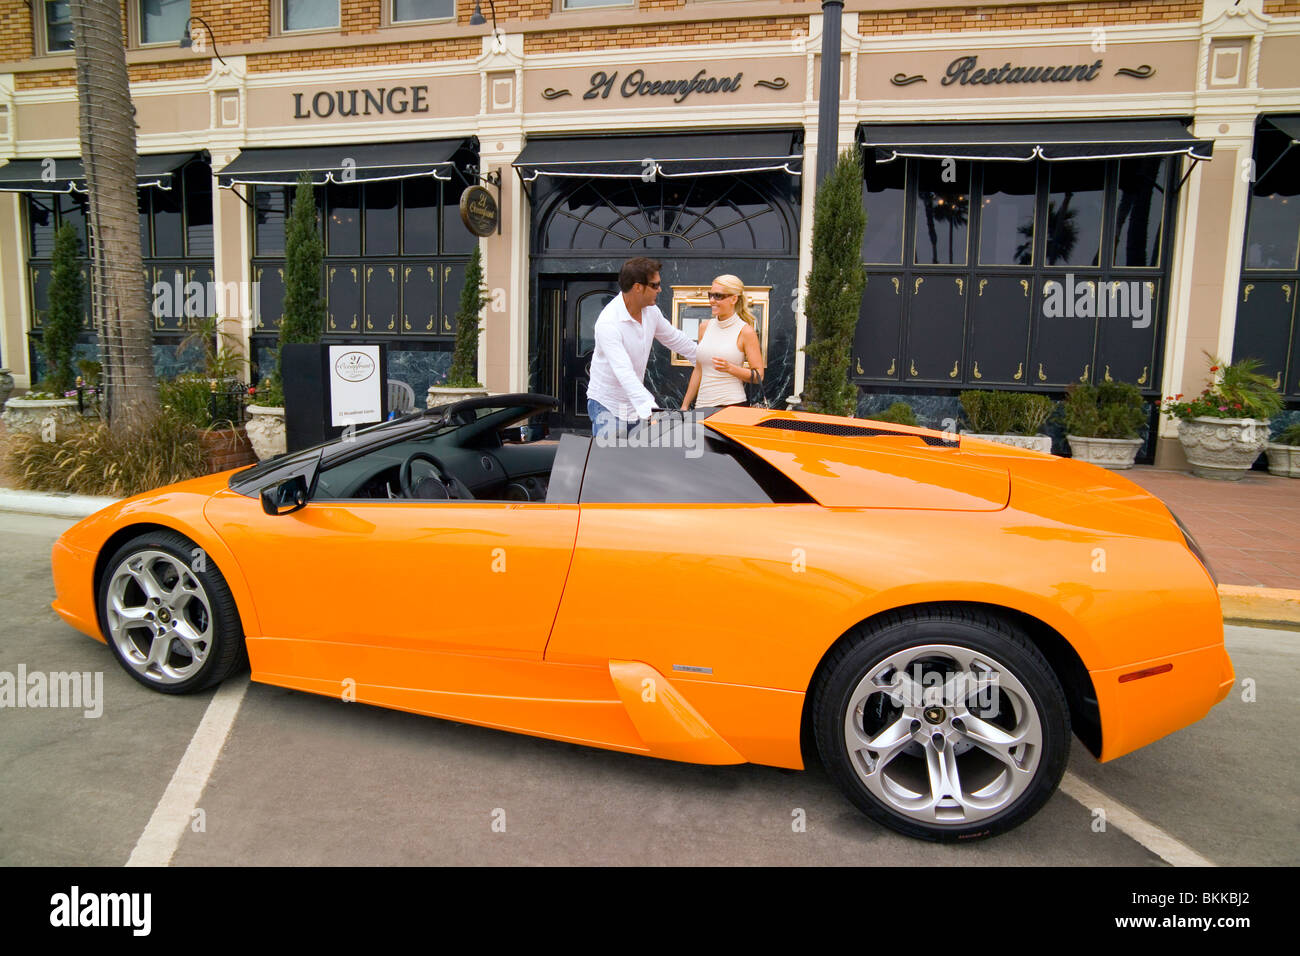 Ein paar kommt in ihren Sportwagen auf der modischen 21 Strandrestaurant, ein langjähriger Favorit für feines Essen in Newport Beach, Kalifornien. Stockfoto